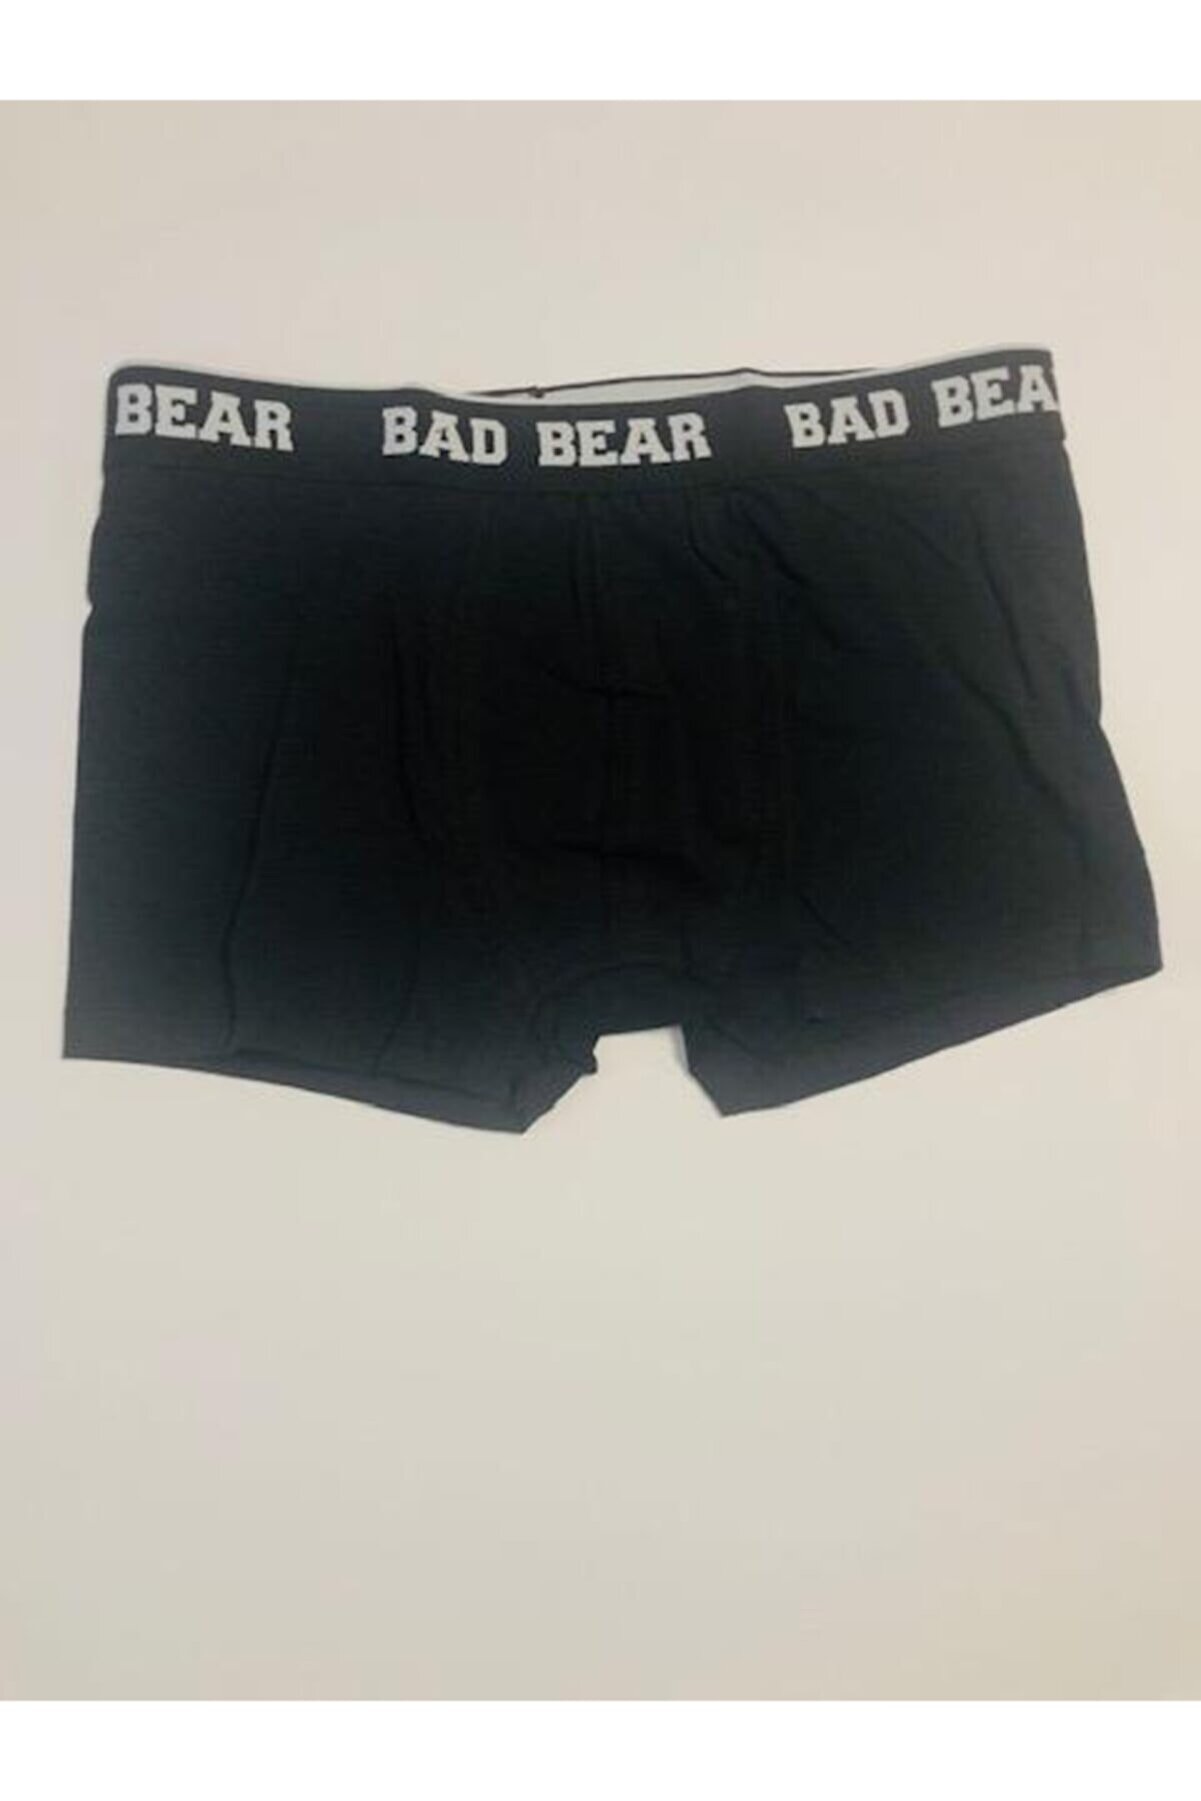 Bad Bear Erkek Basıc Boxer 21.01.03.002